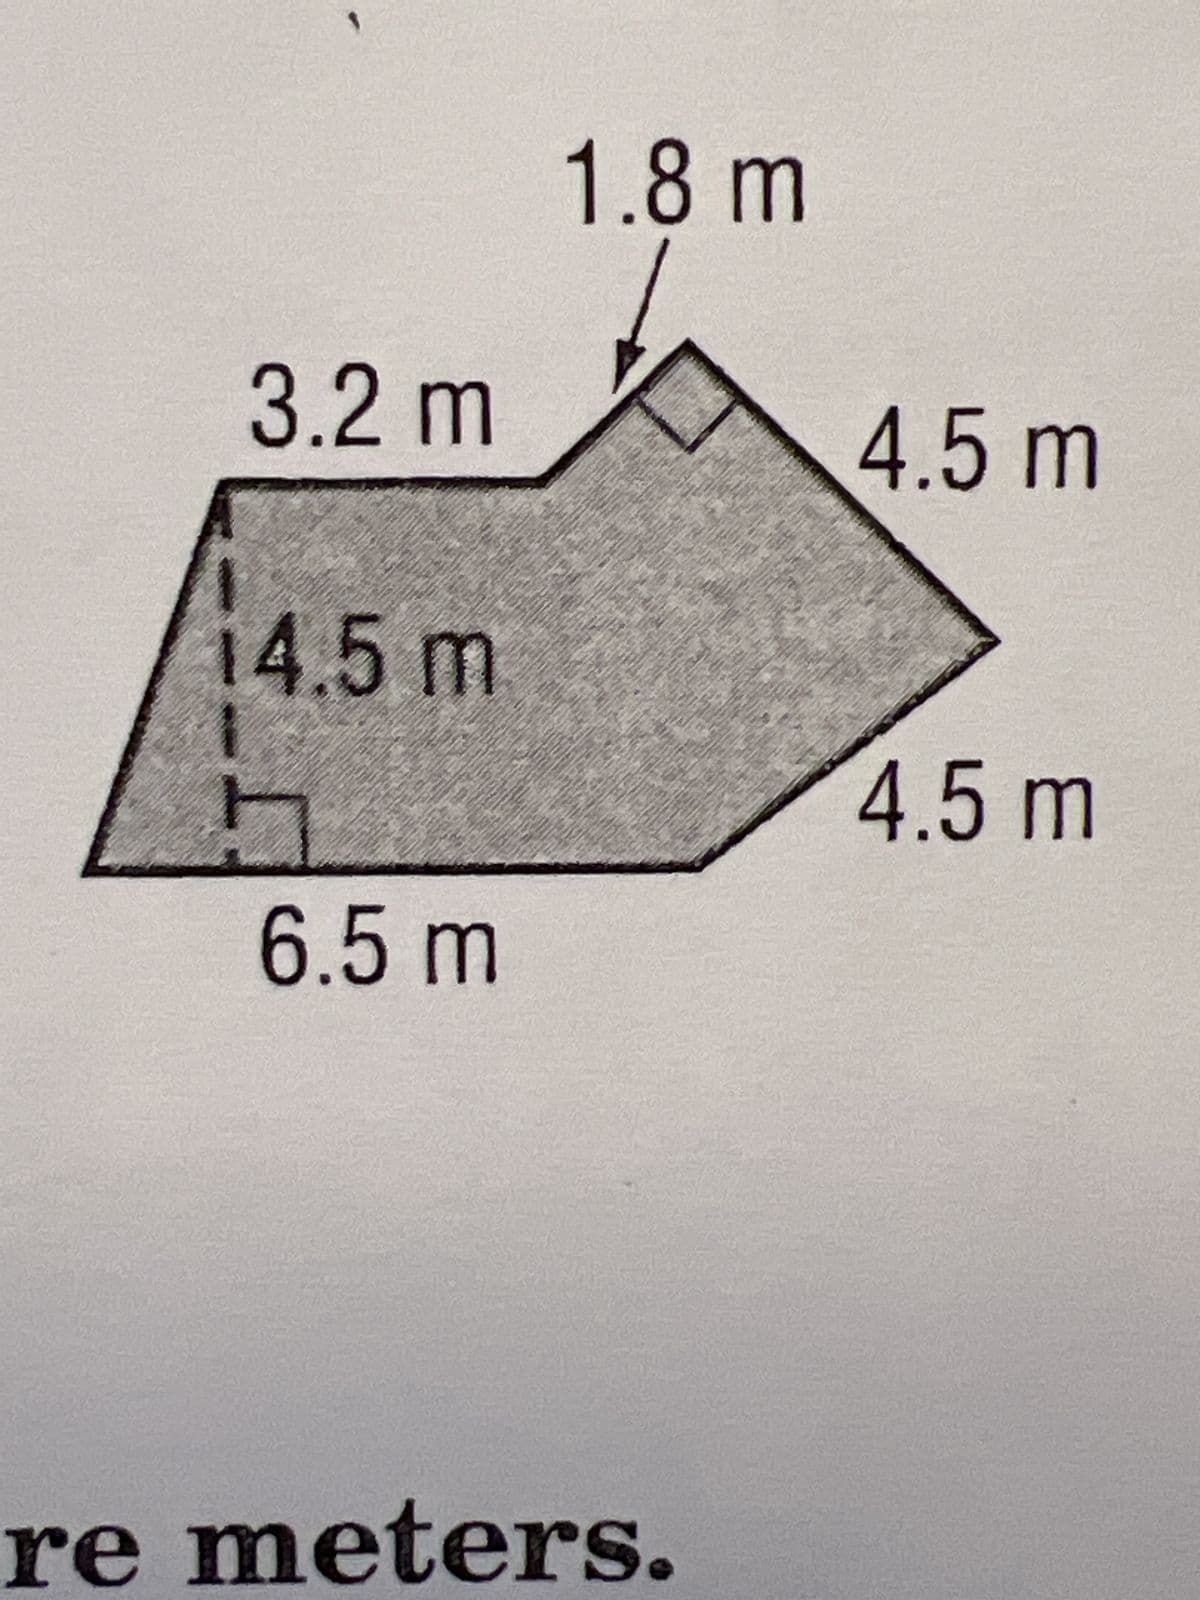 1.8 m
3.2 m
4.5 m
14.5 m
4.5 m
6.5 m
re meters.